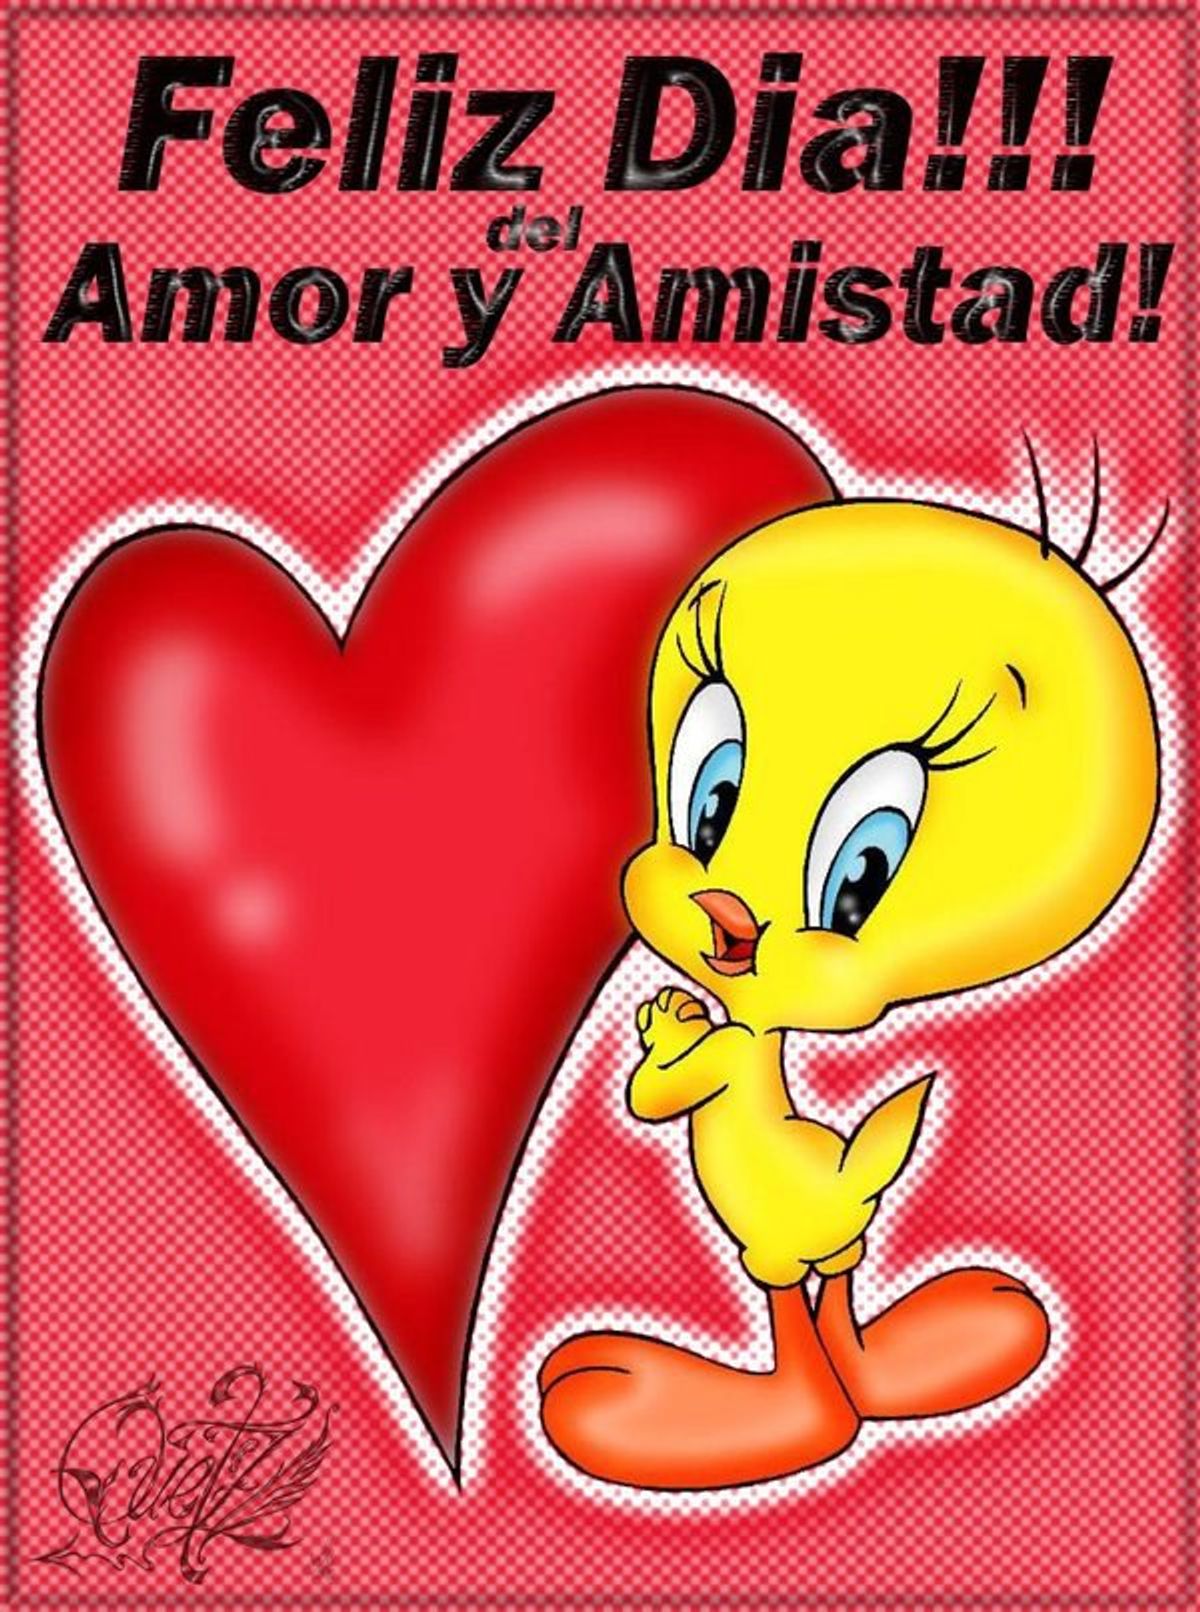 "El Dia Del Amor y La Amistad" Aka Valentine's Day